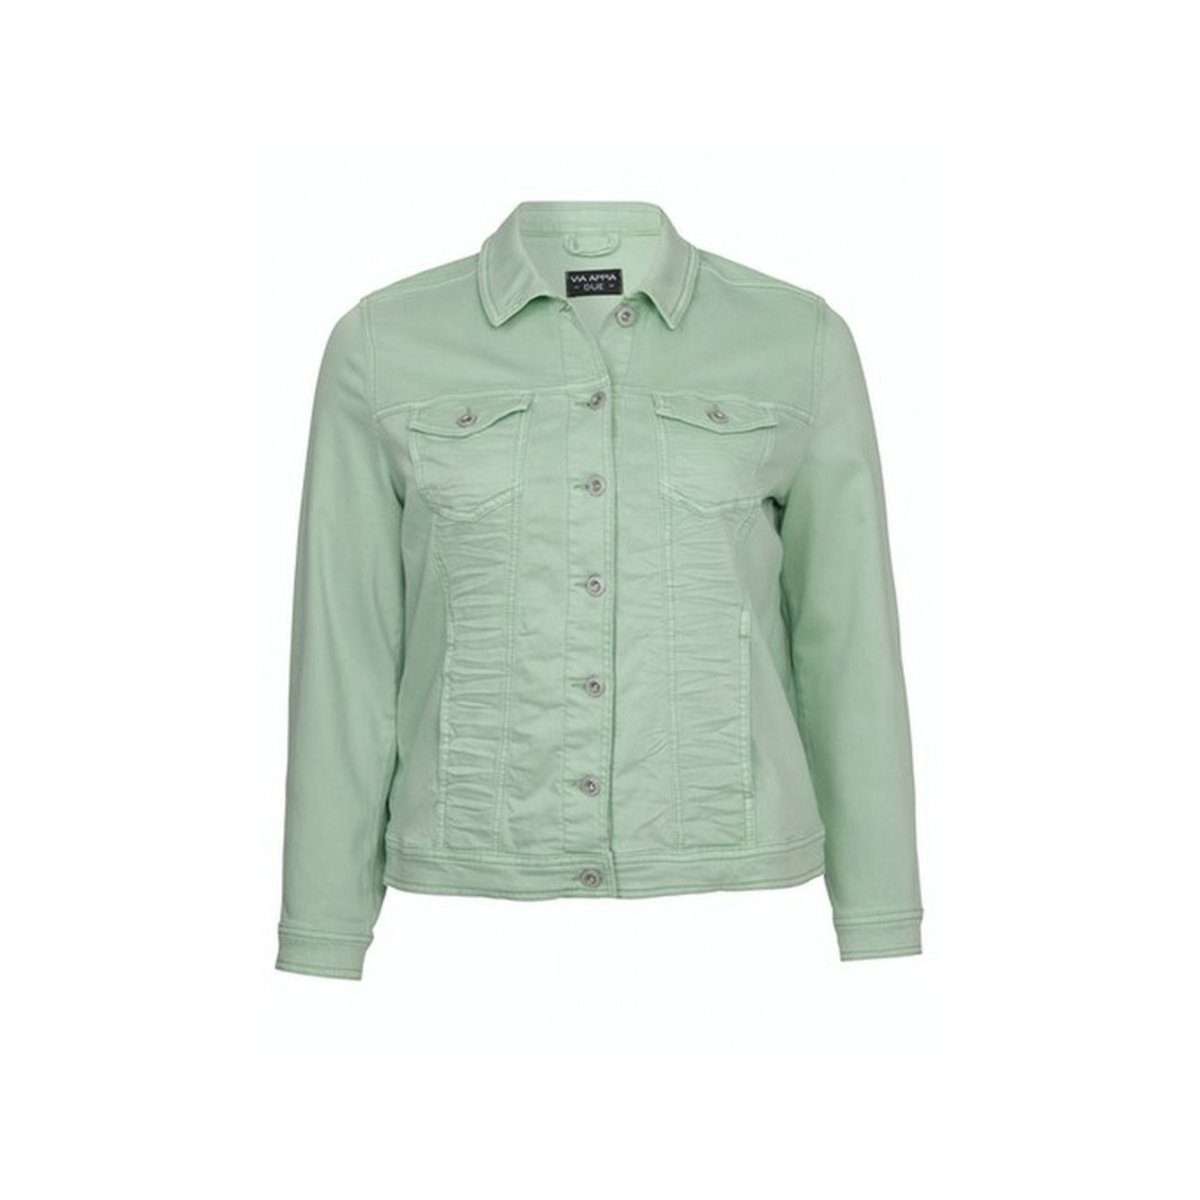 Джинсовая куртка светло-зеленая (1 шт)